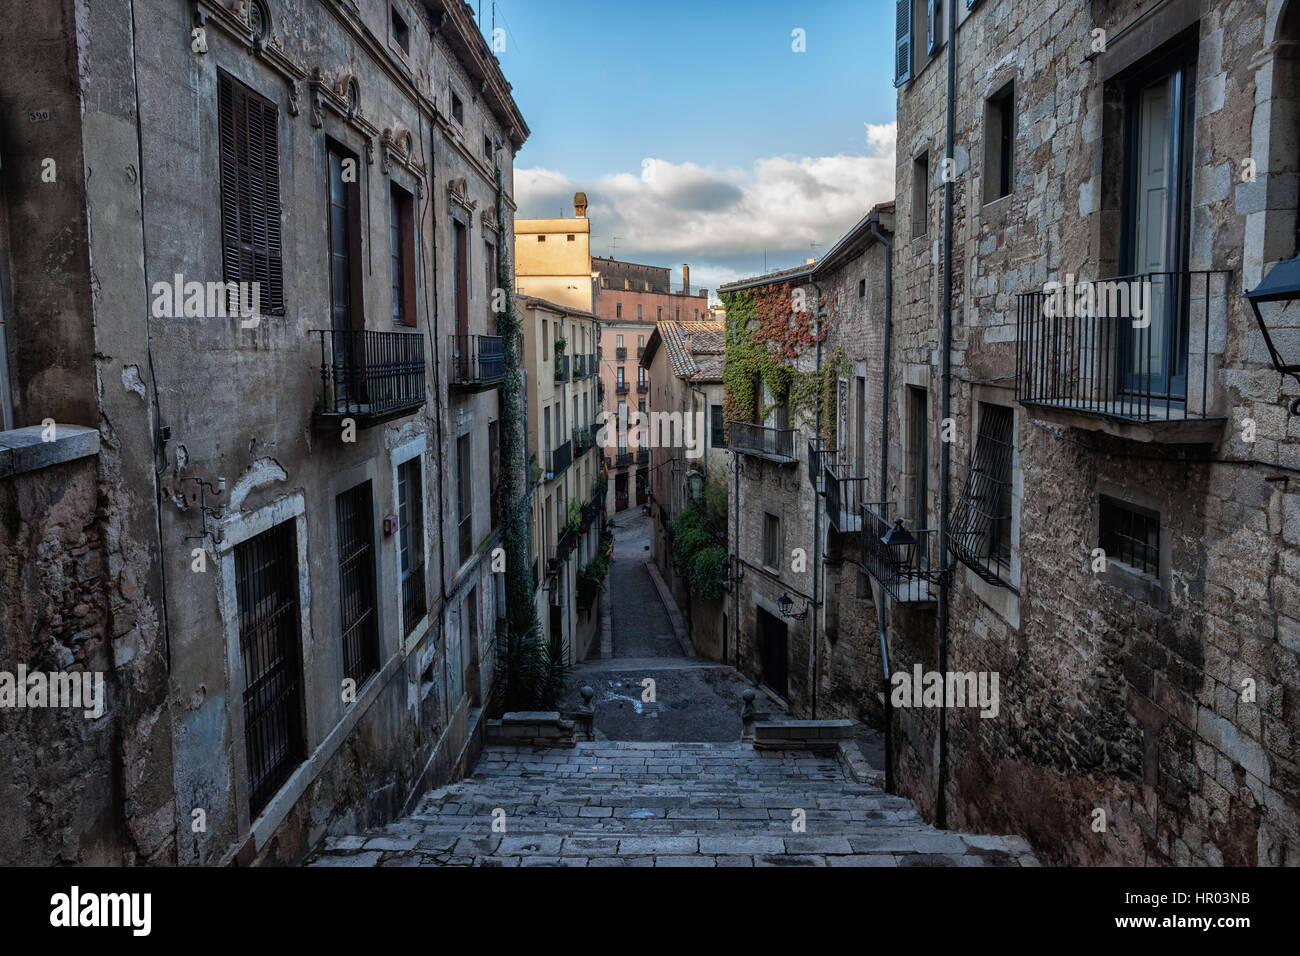 Città Vecchia (Barri Vell) architettura storica nella città di Girona in Catalogna, Spagna, edifici lungo Sant Domenec scale Foto Stock